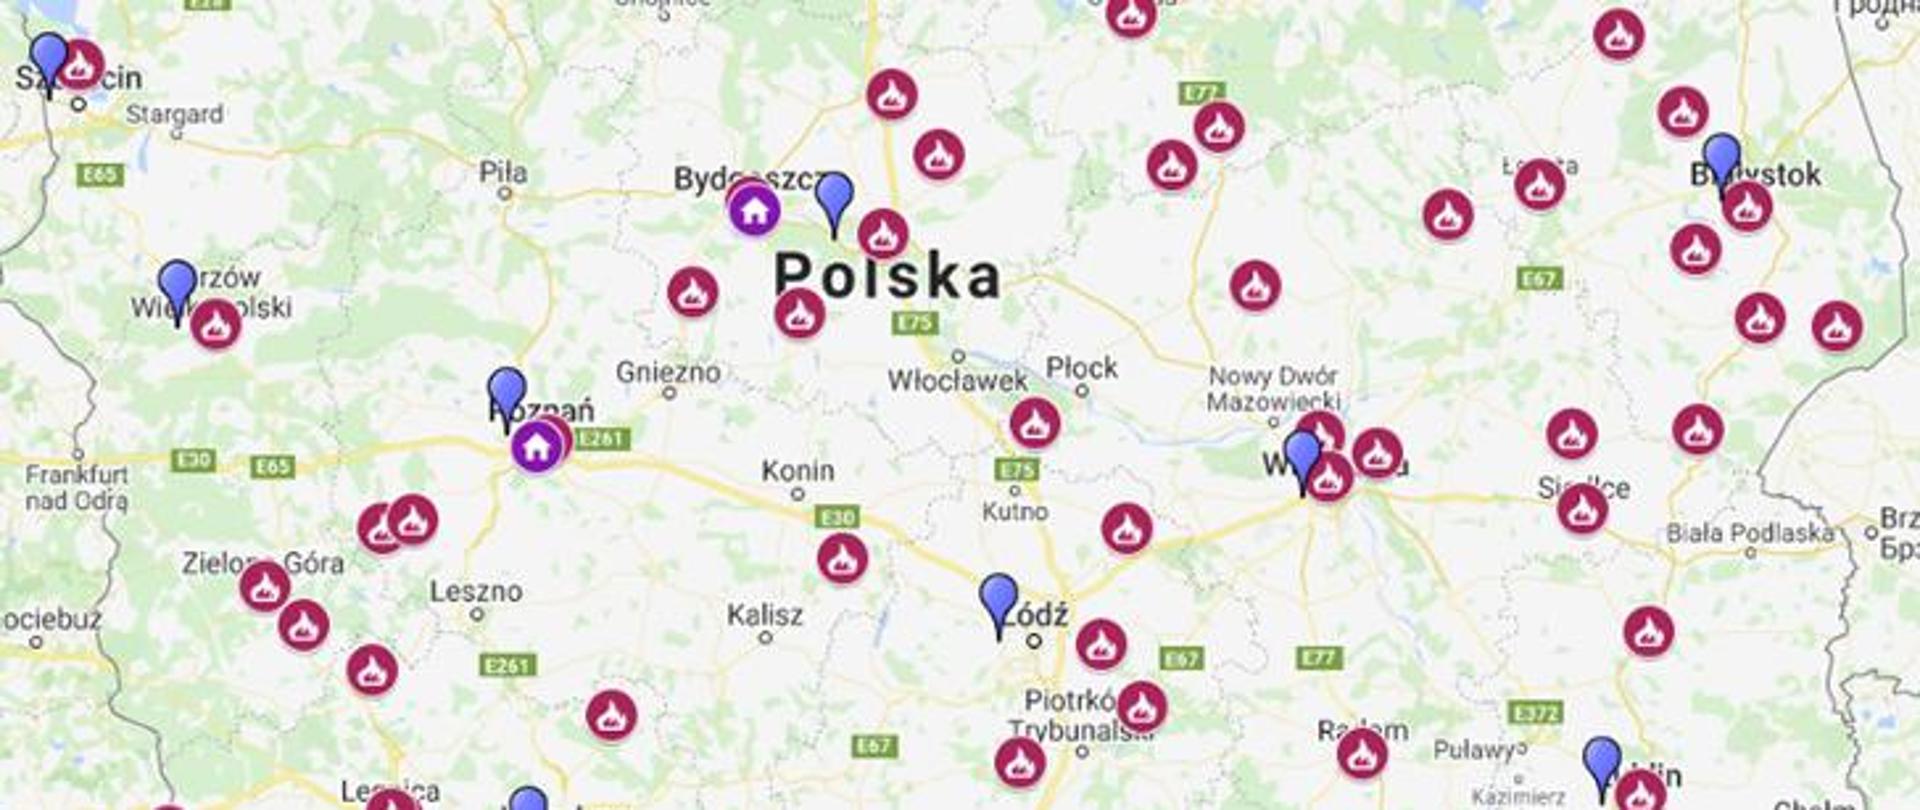 Zdjęcie przedstawia wycinek mapy Polski z zaznaczonymi lokalizacjami sal edukacyjnych OGNIK